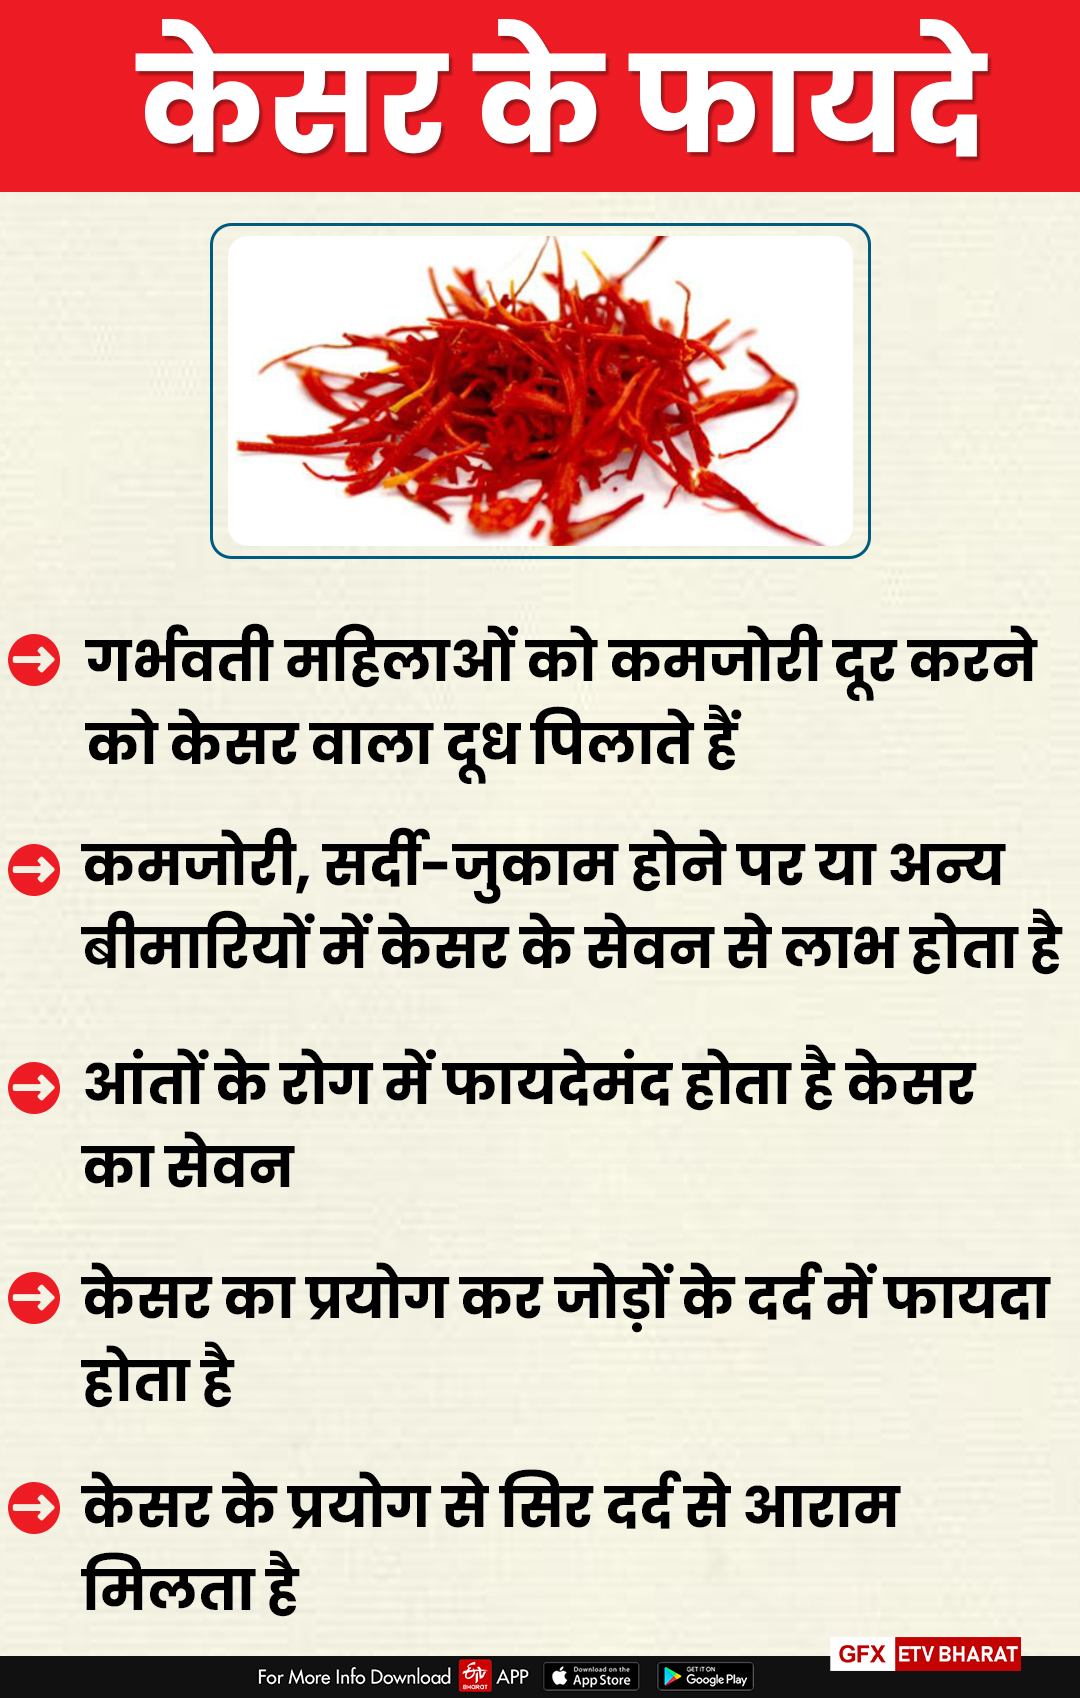 Saffron Cultivation News